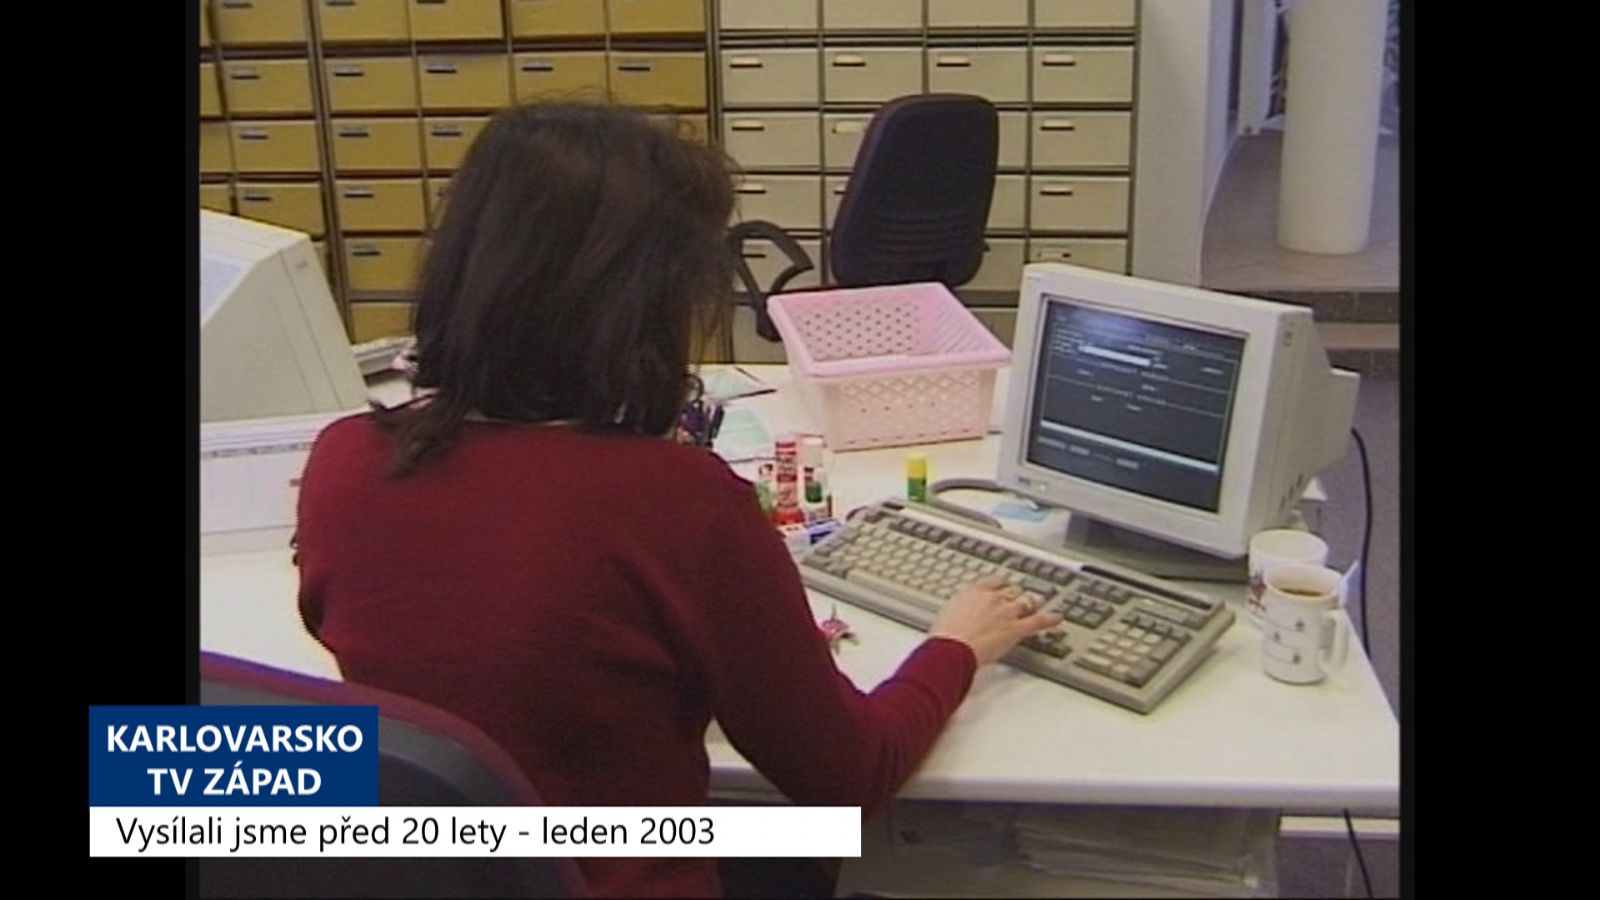 2003 – Cheb: Vybavení nových úředníků vyjde na 14 milionů korun (TV Západ)